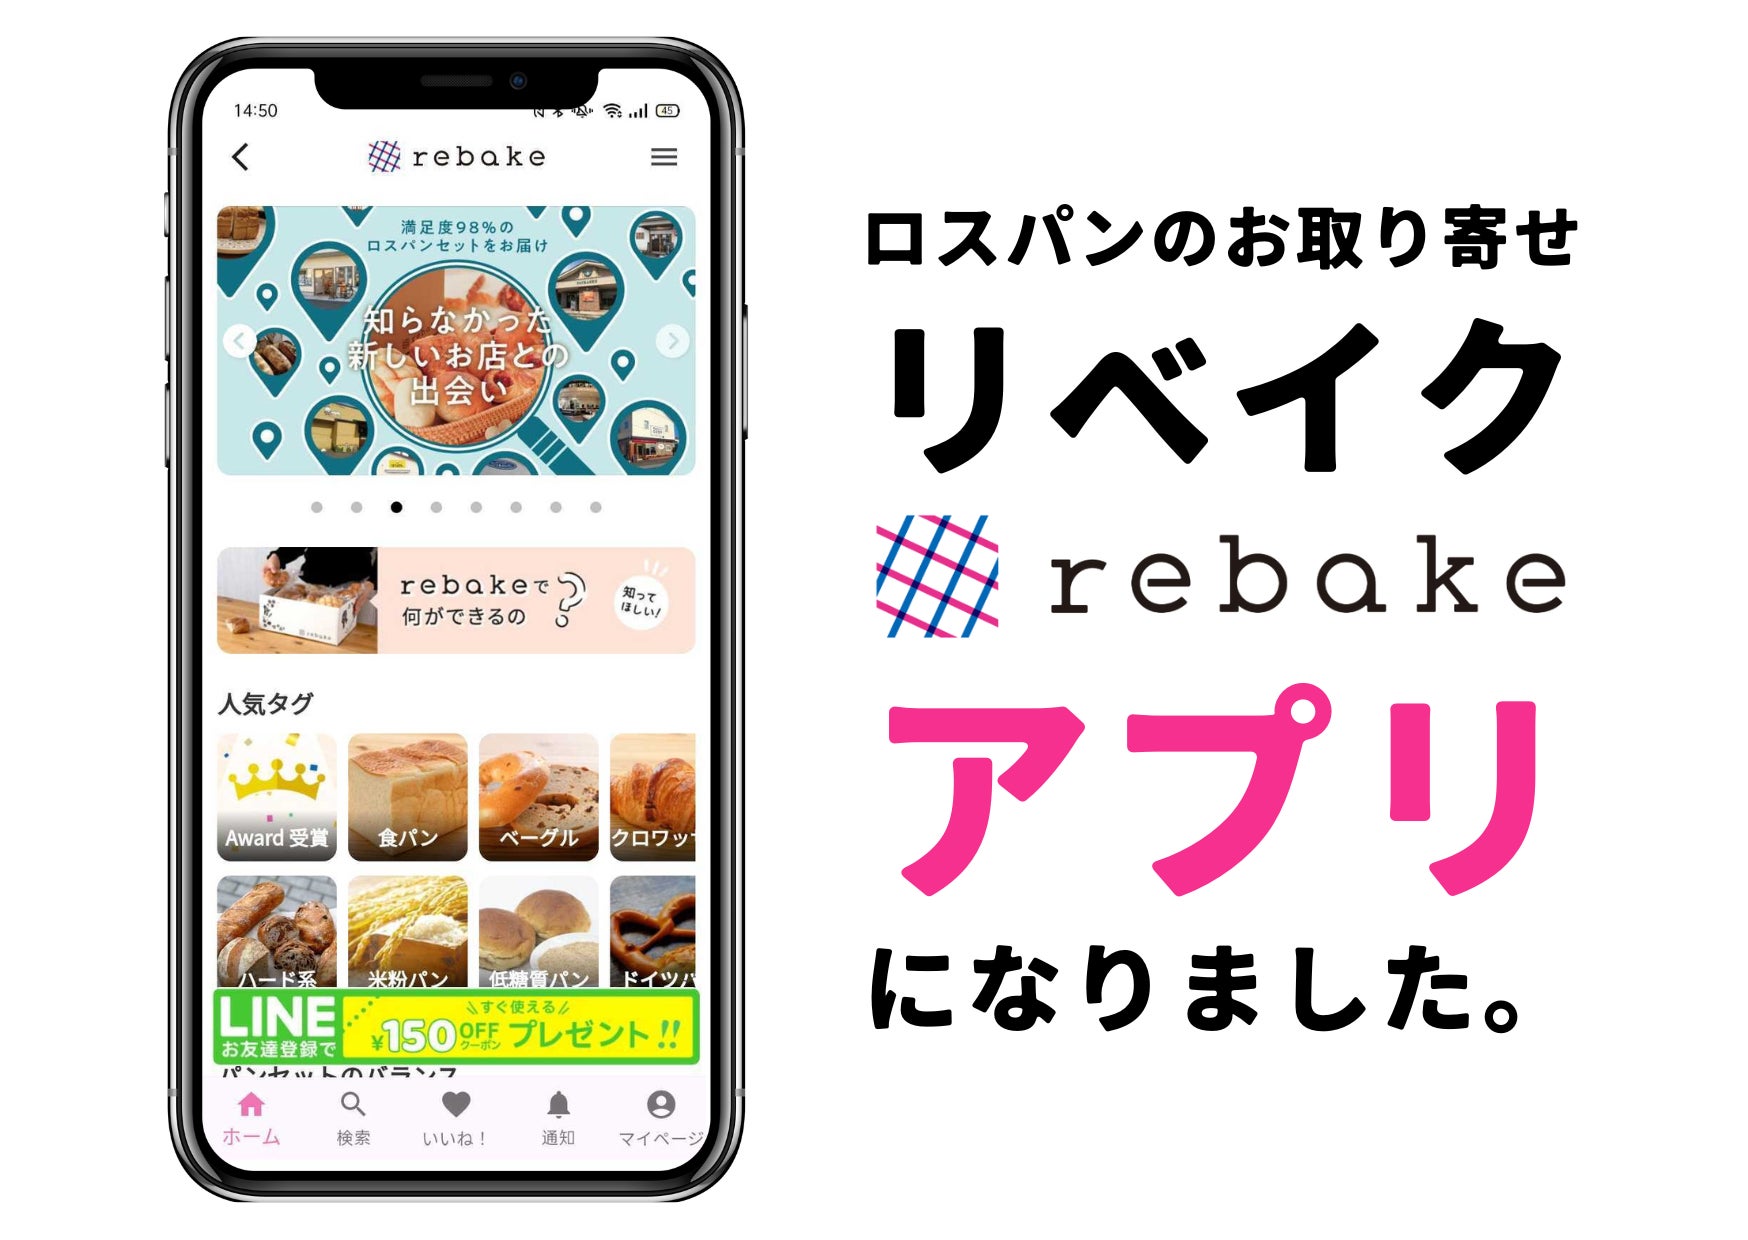 【合同会社クアッガ】パンを食べて食品ロスを削減できるiOSアプリ「rebake」をリリースしました。